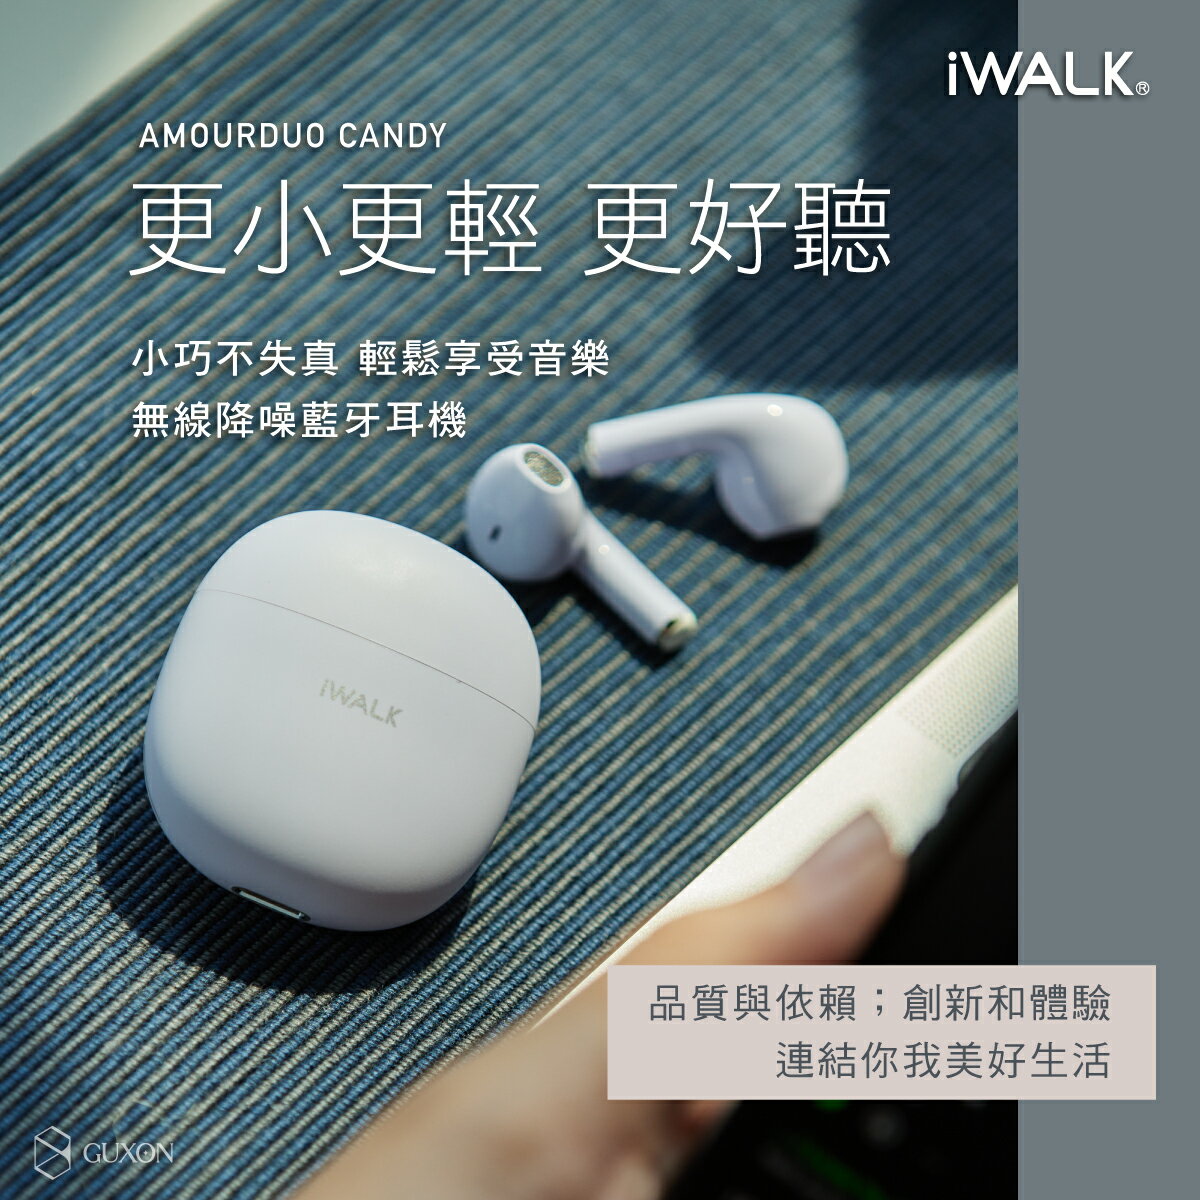 iWALK/鵝卵石無線5.2藍芽耳機/安卓蘋果可用/輕巧降噪/低延遲/大動圈/運動耳機/健身耳機/繽紛設計/馬卡龍耳機